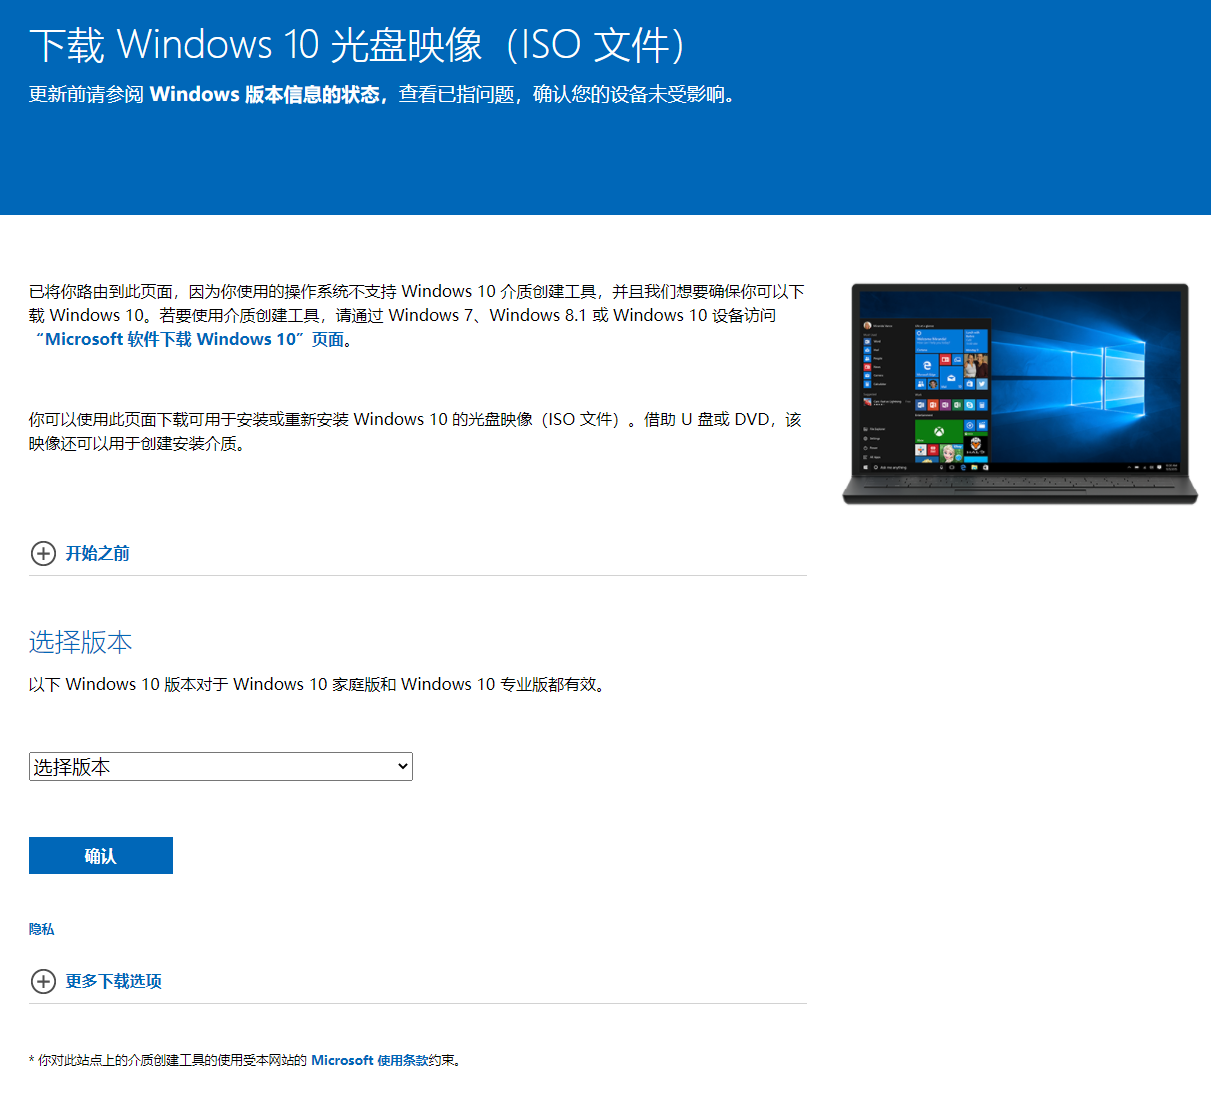 Windows 10 下载页面 1